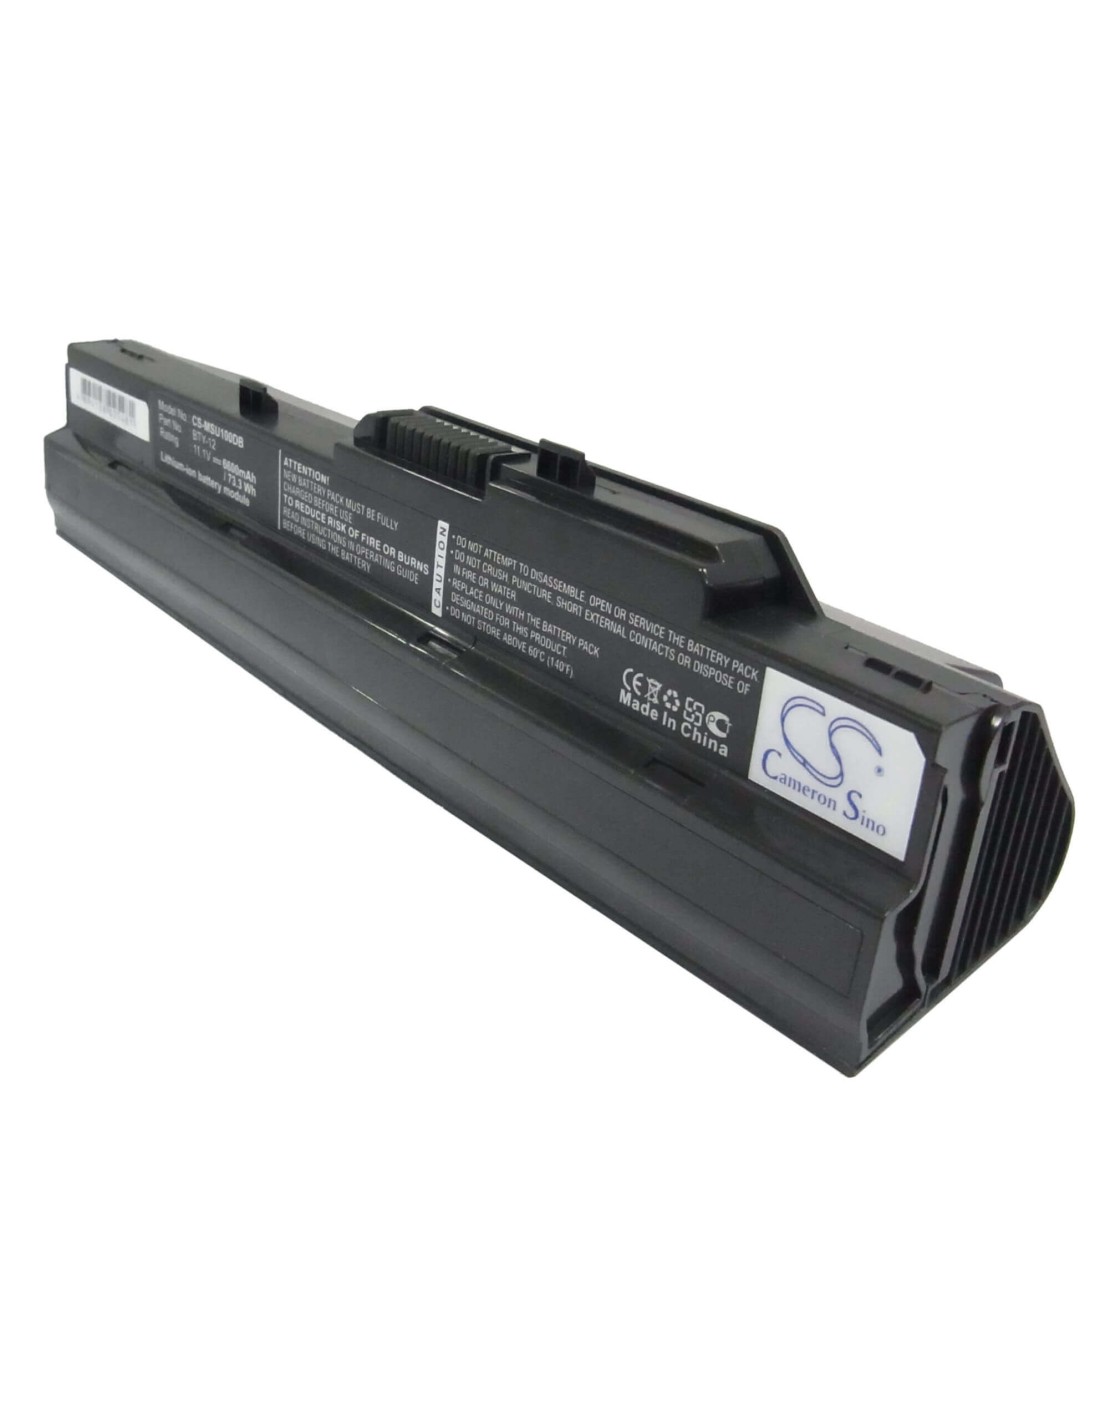 Black Battery for Advent 4211, 4212 11.1V, 6600mAh - 73.26Wh